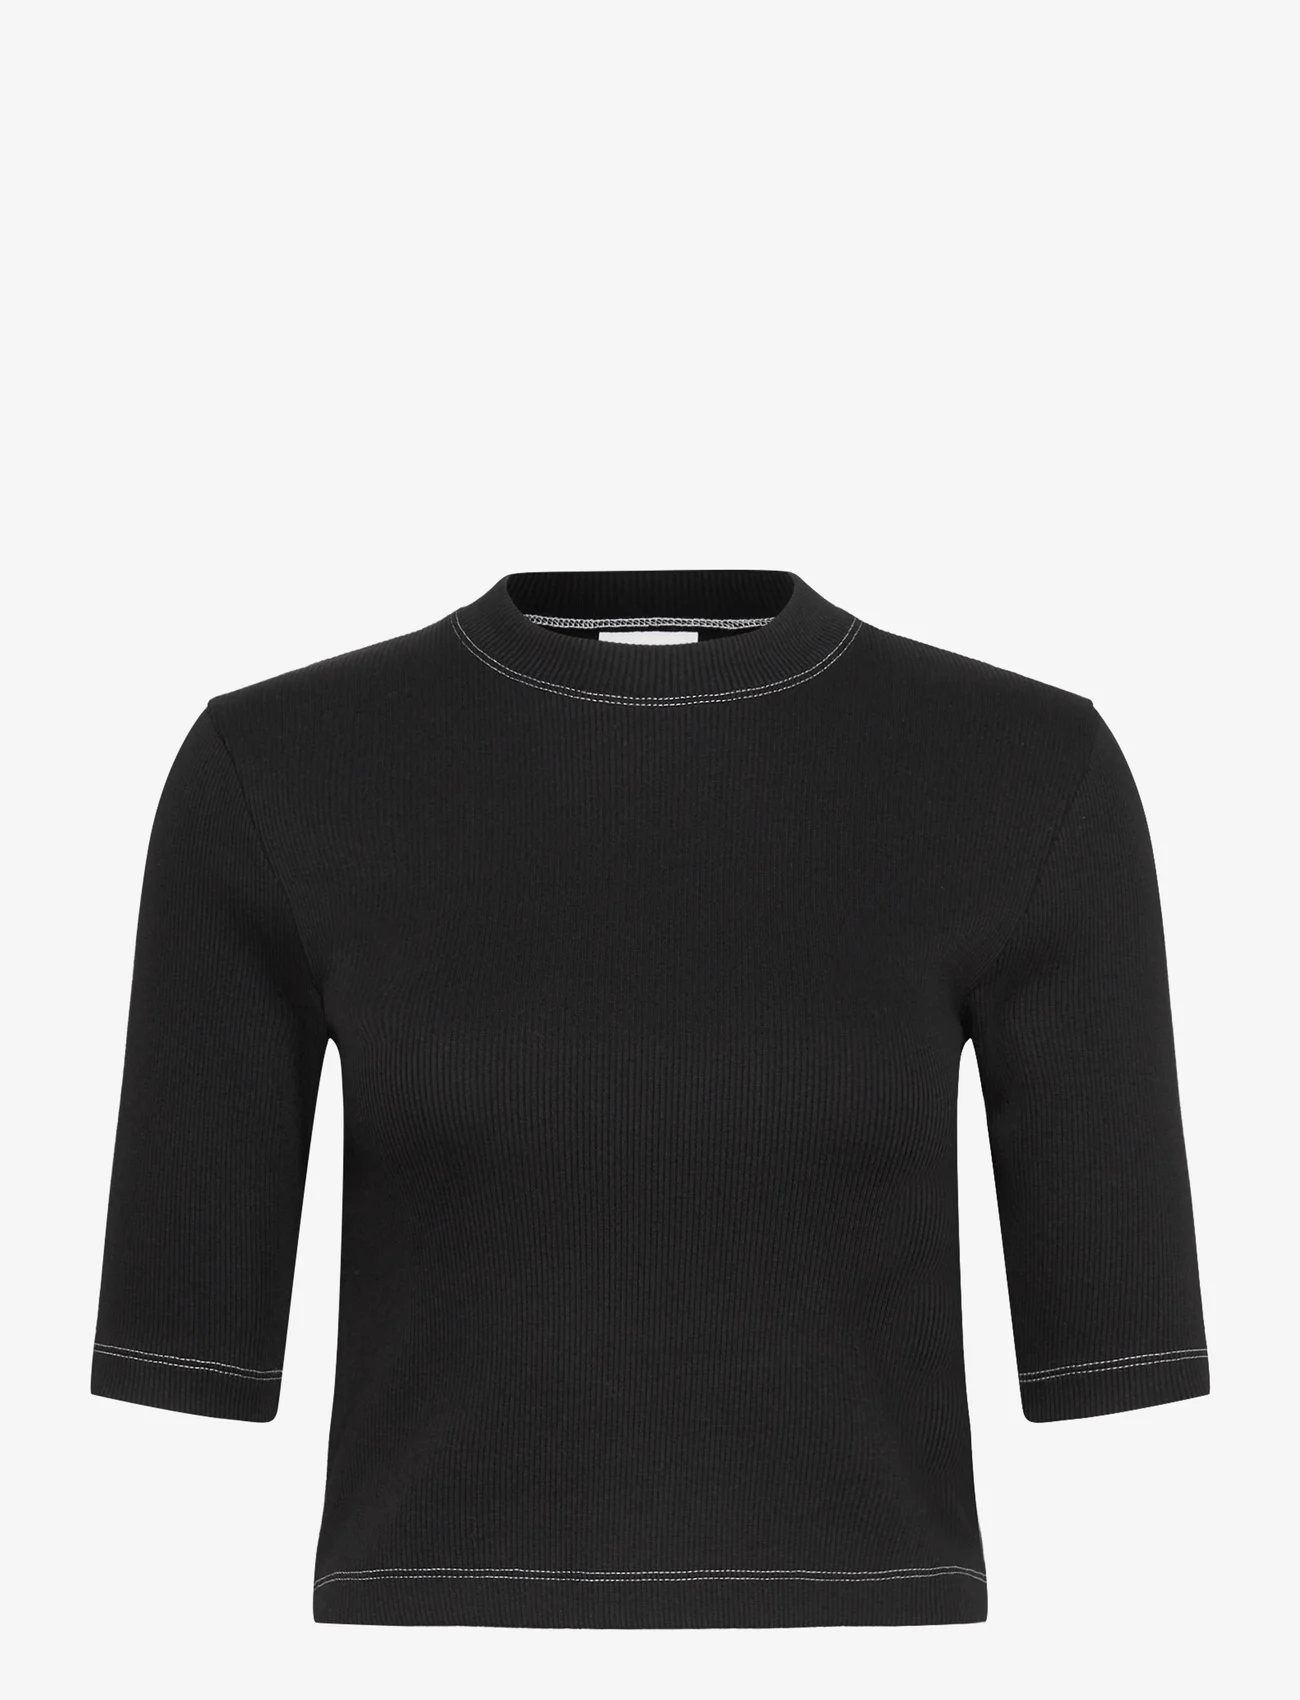 Day Birger et Mikkelsen - Bram - Heavy Rib - t-shirts & tops - black - 0